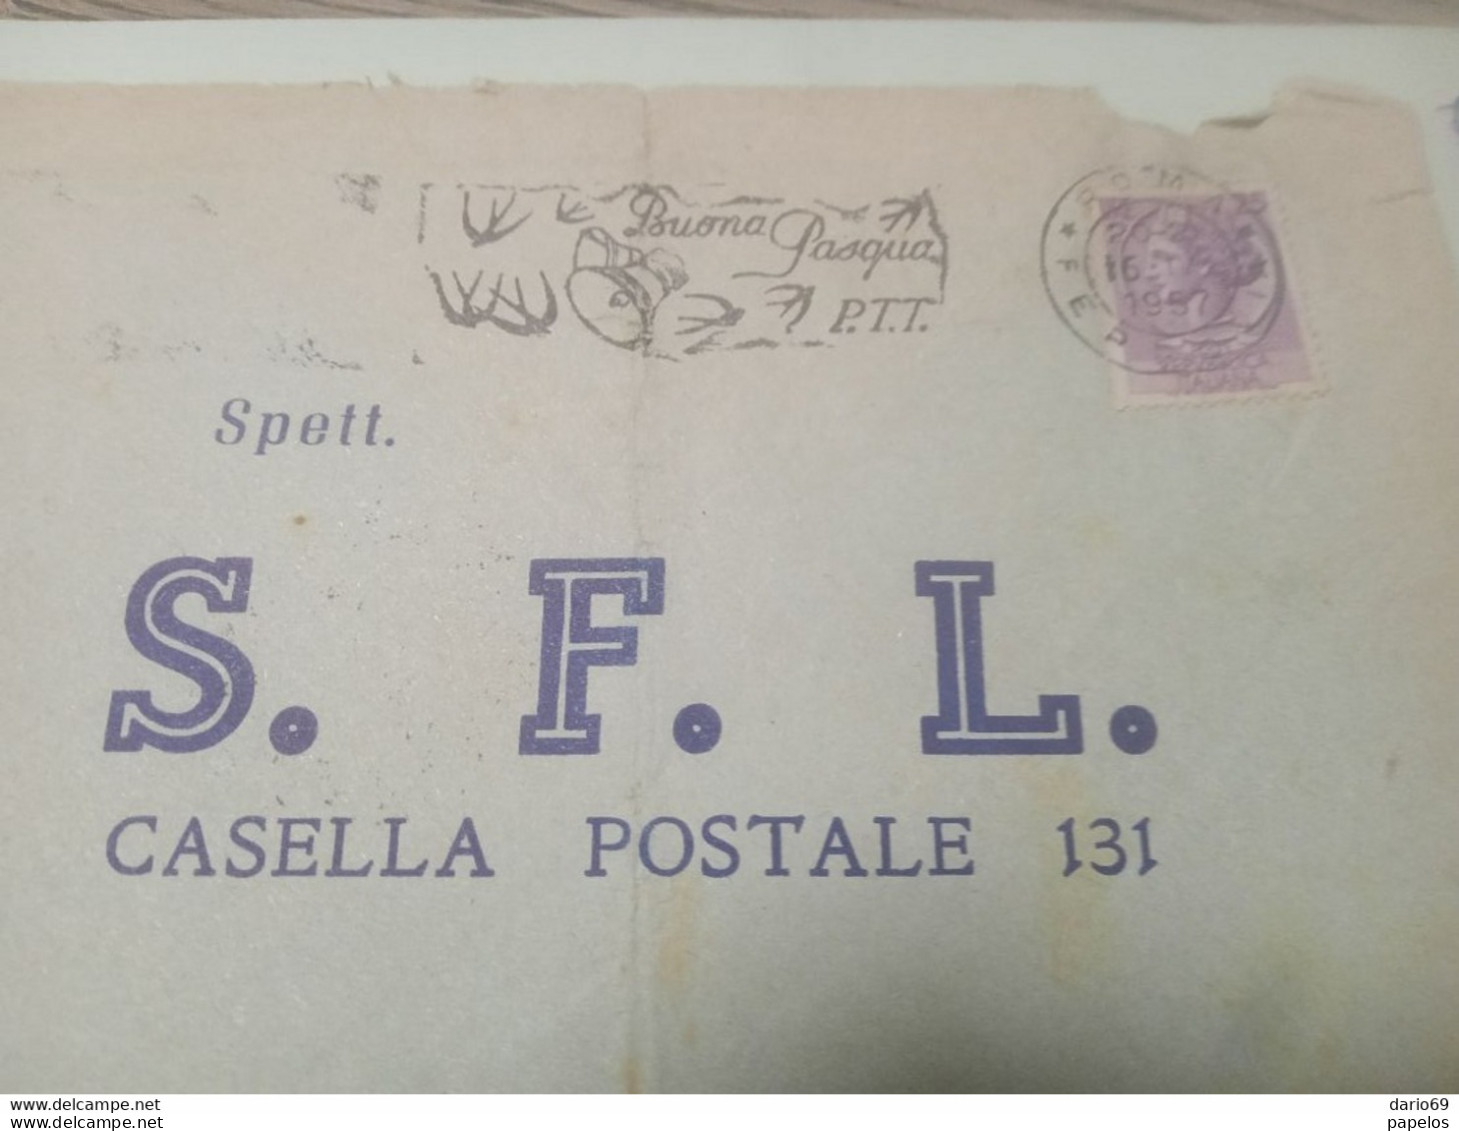 1957 LETTERA INTESTATA S.F.L. CON ANNULLO ROMA X MARSALA TRAPANI - 1946-60: Marcophilie